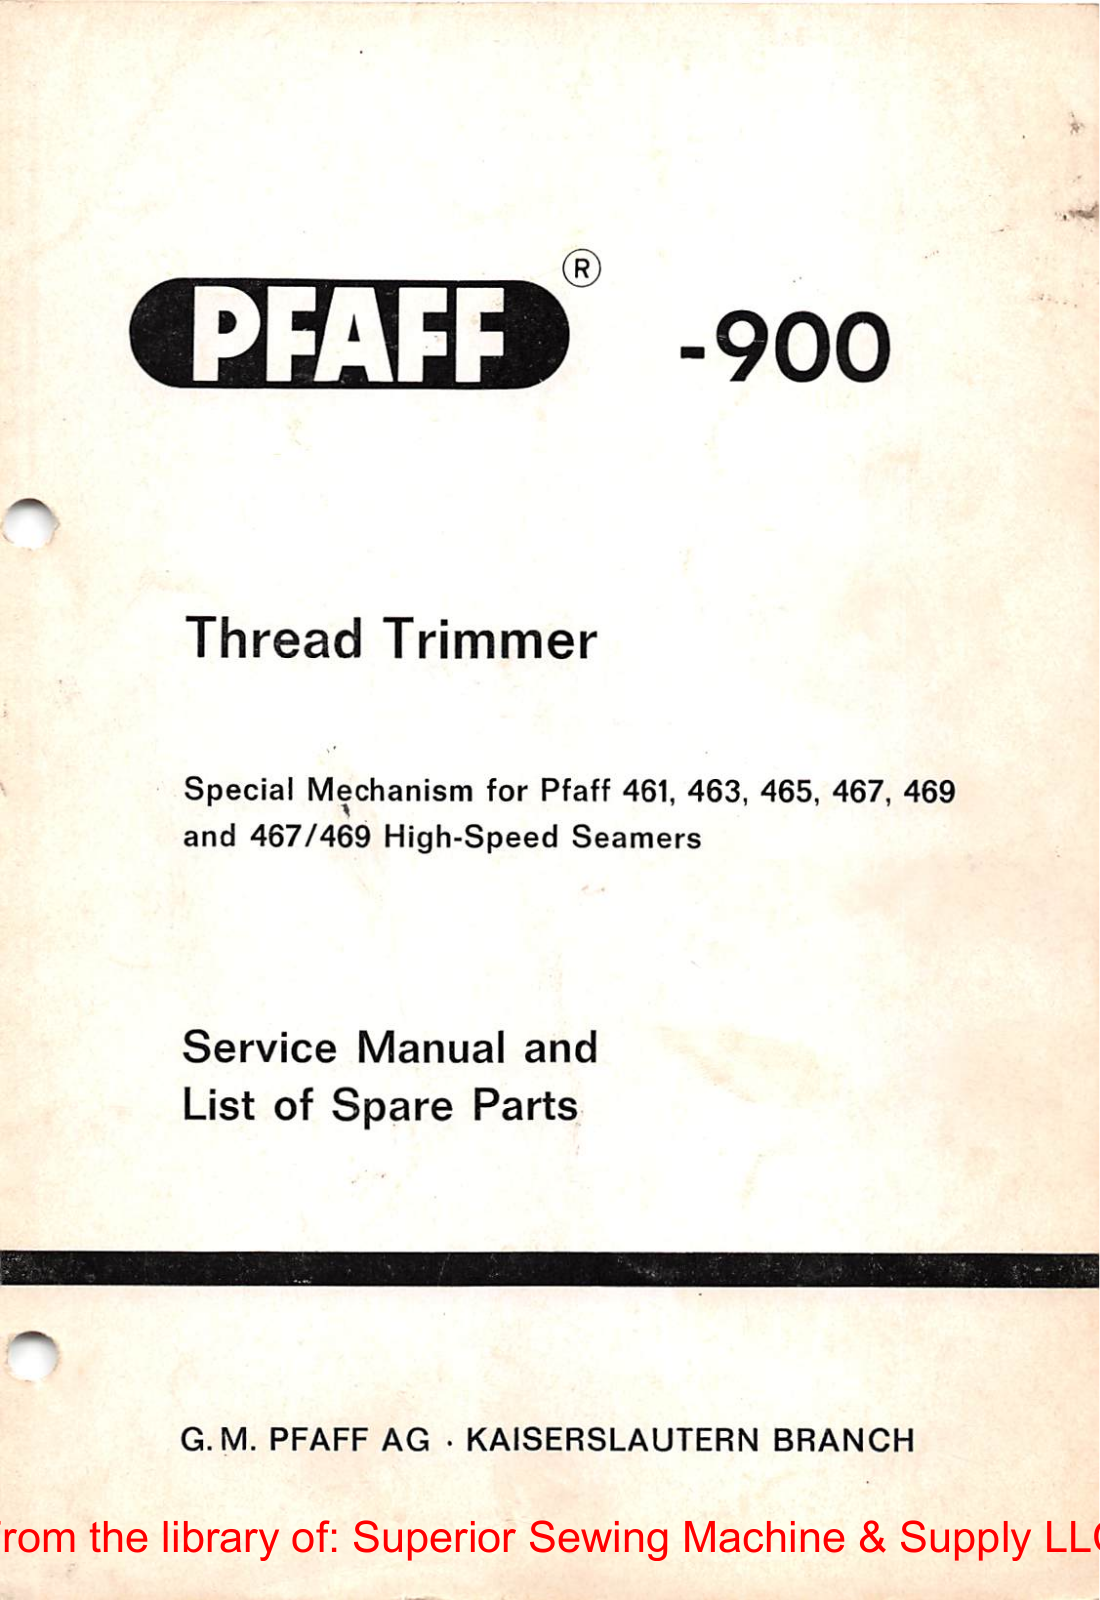 Pfaff 900 Service Manual